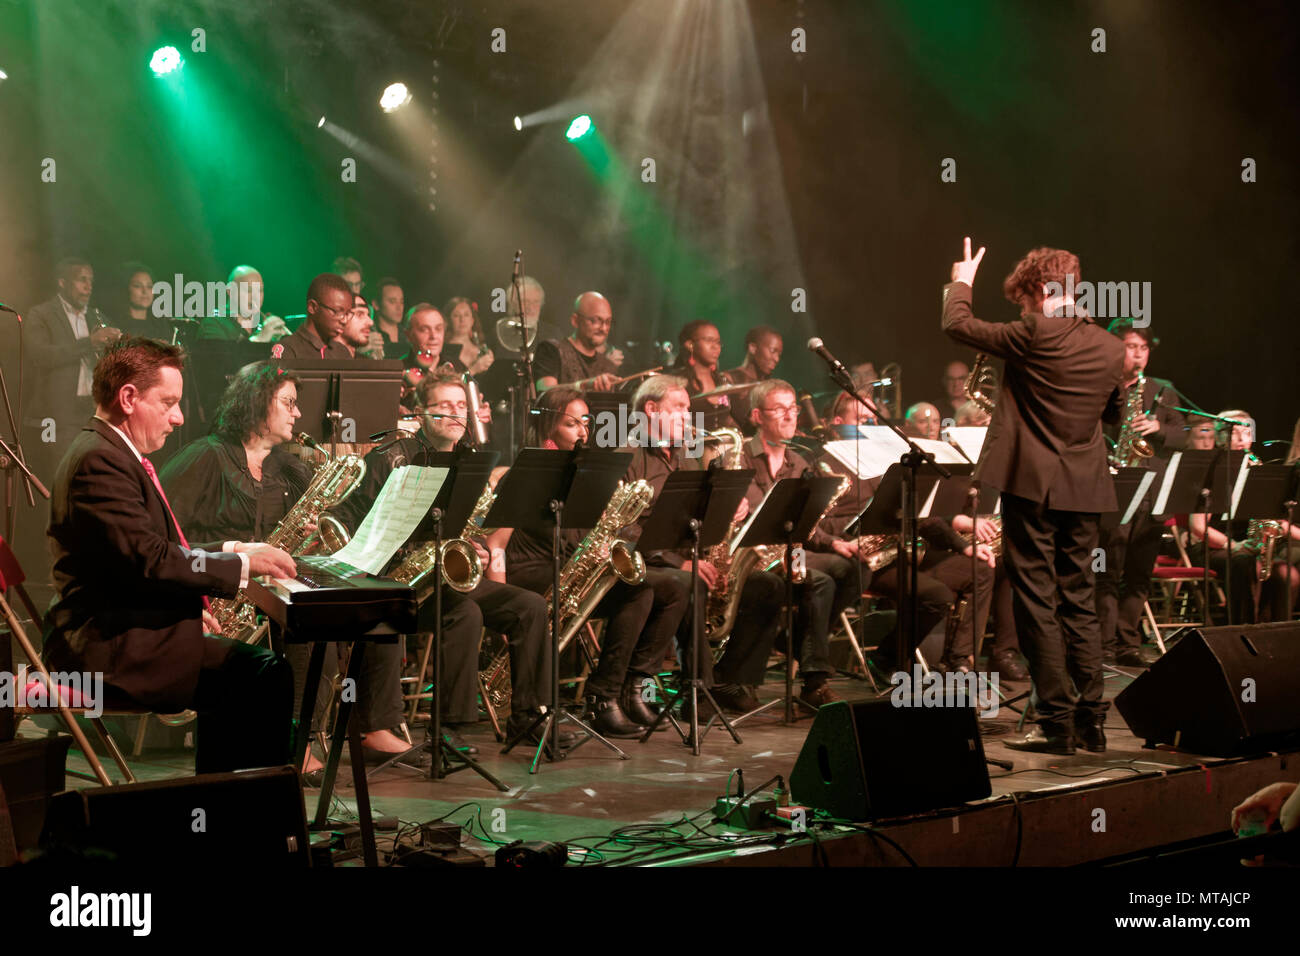 RIS-Orangis, Francia 26 maggio 2018. La Fanfare Ephemere e la Big Band del CRD si esibiscono in concerto a RIS-orangis, Francia Foto Stock